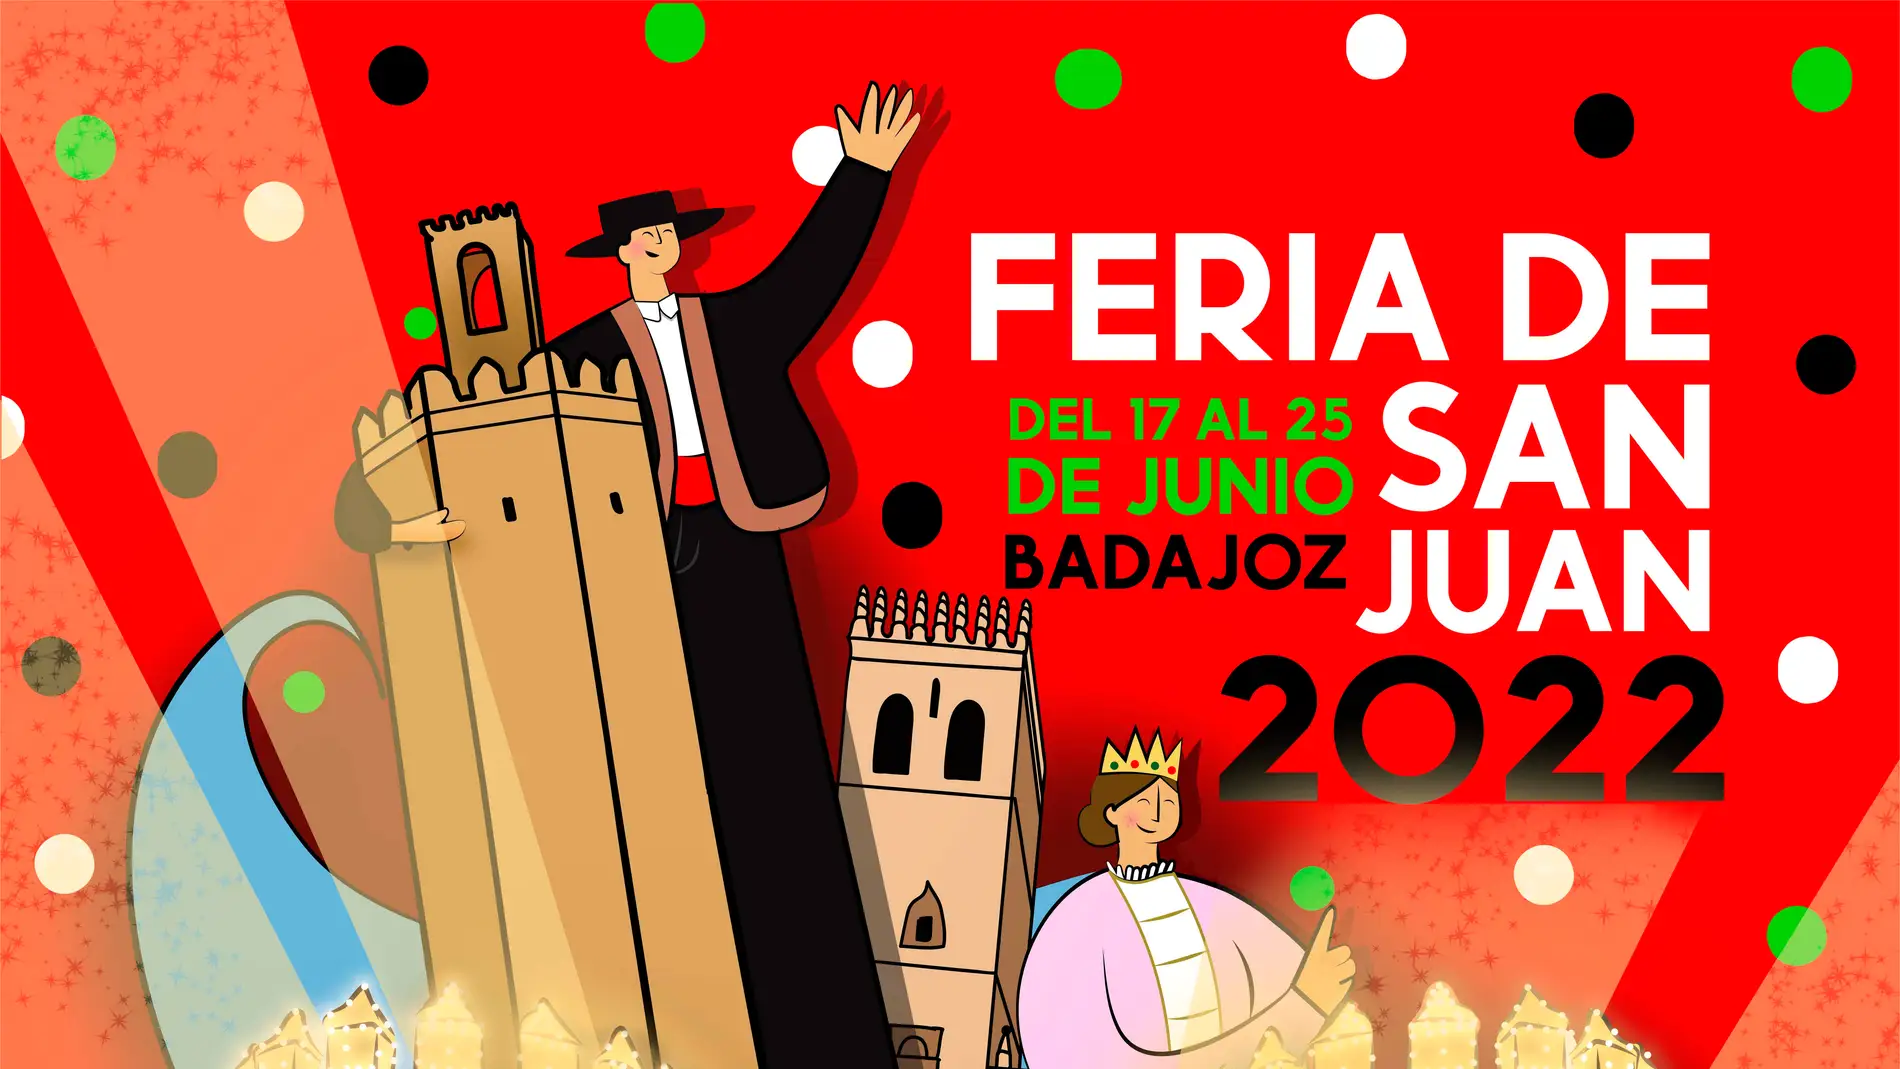 La Feria de San Juan ya tiene cartel anunciador